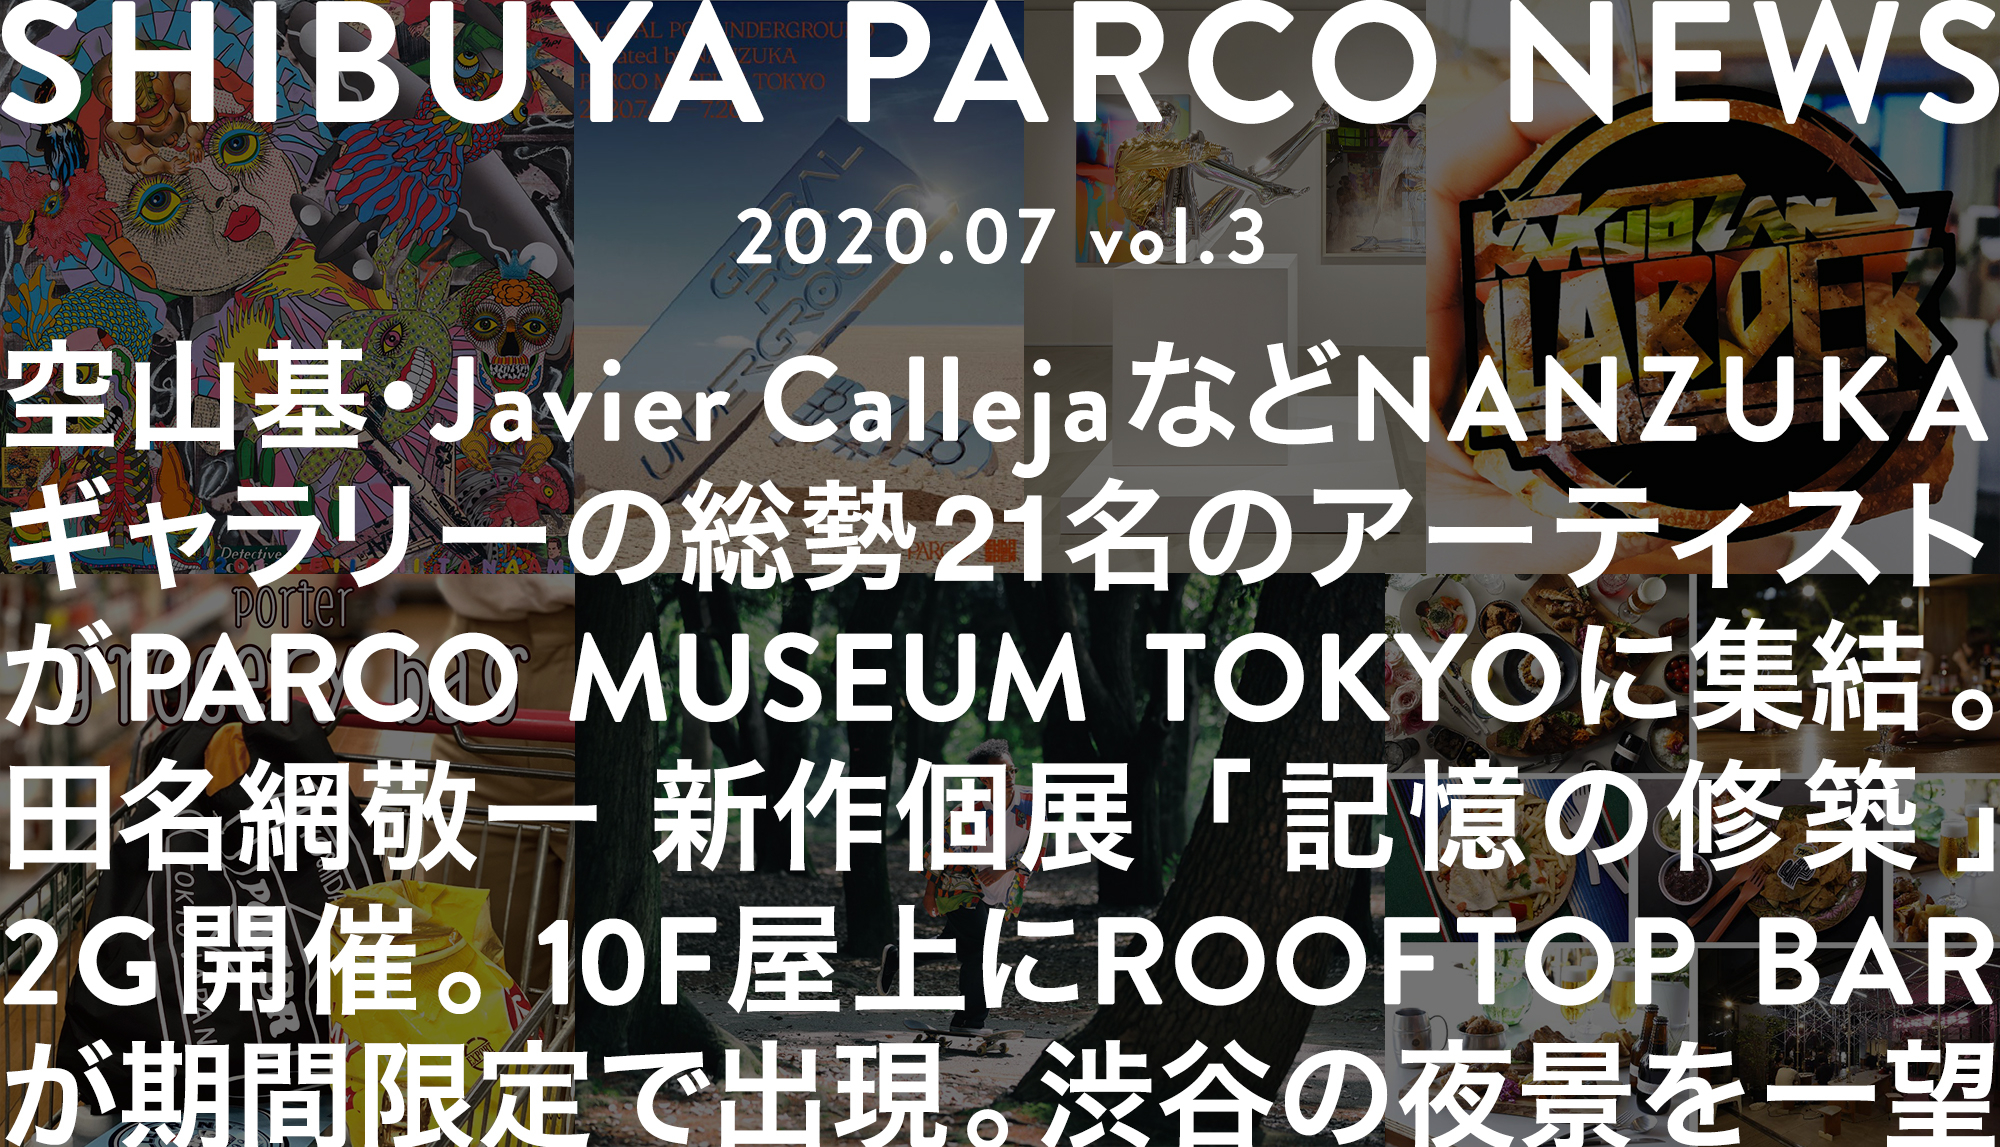 SHIBUYA PARCO NEWS-2020.7-vol.3